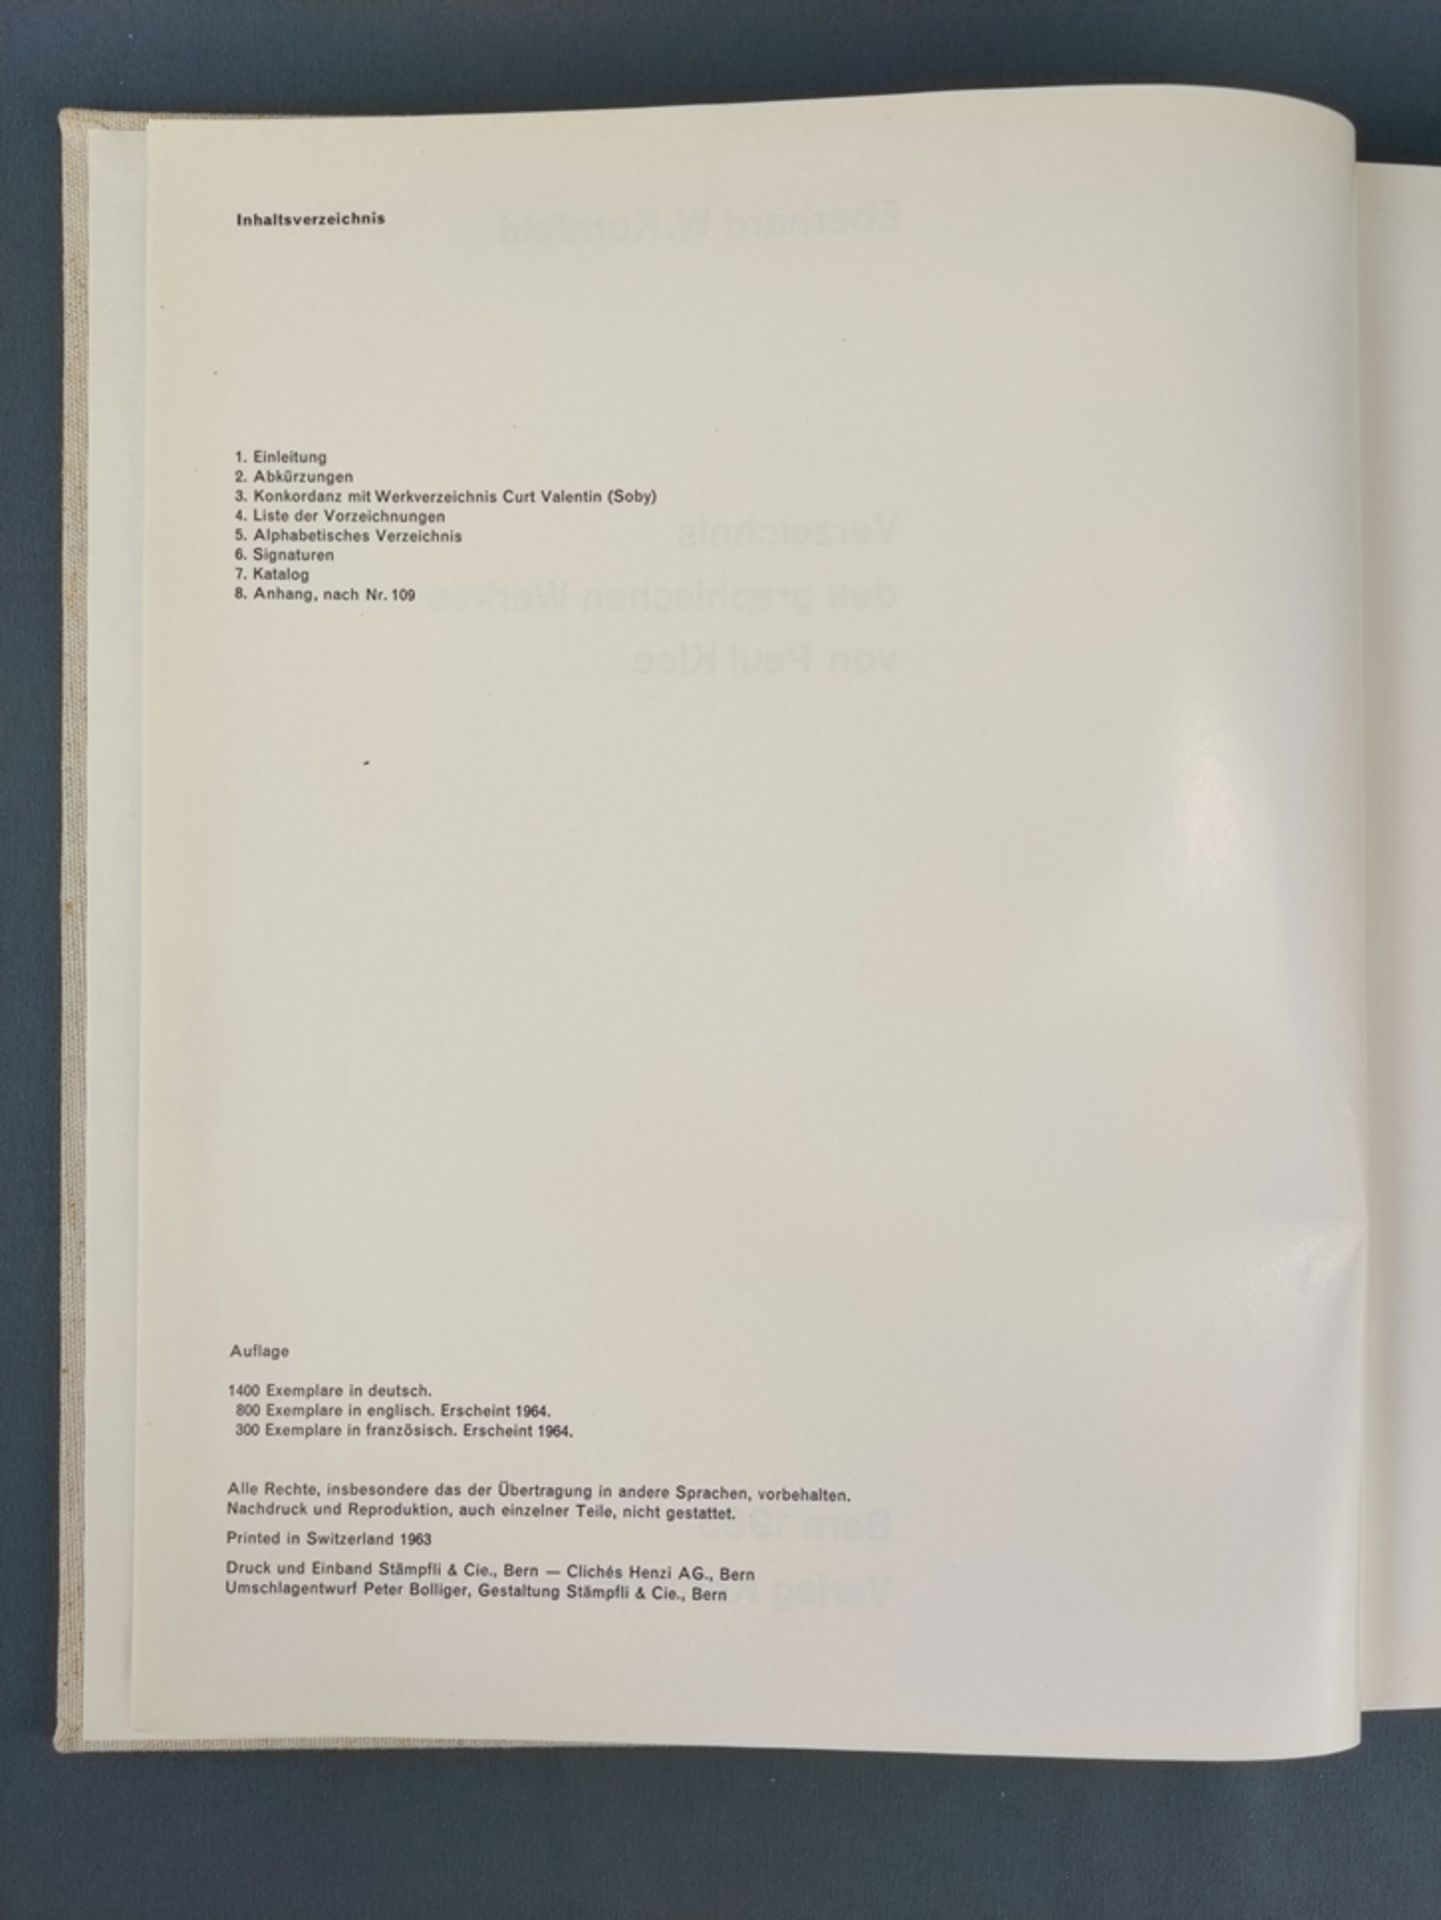 Kunstband Klee, Kornfeld, Eberhard W., "Verzeichnis des graphischen Werkes von Paul Klee", Bern 196 - Bild 2 aus 2